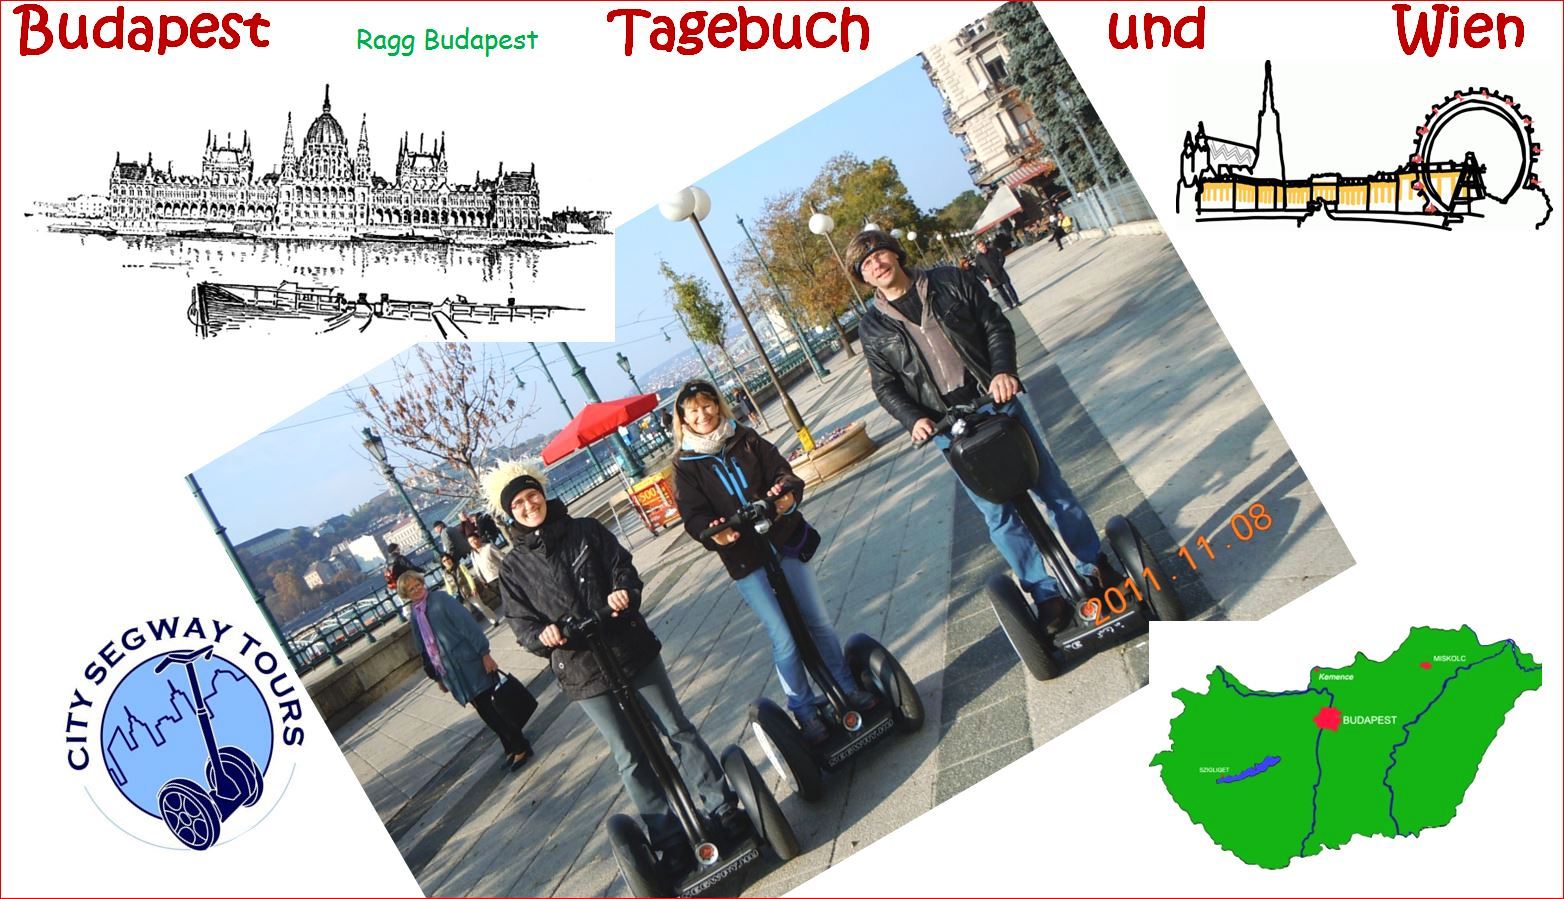 ragg 2011-11-05 -- 11-10 - 1210AAweb - Budapest und Wien - Seite 01 Deckblatt - Bild 01 - A